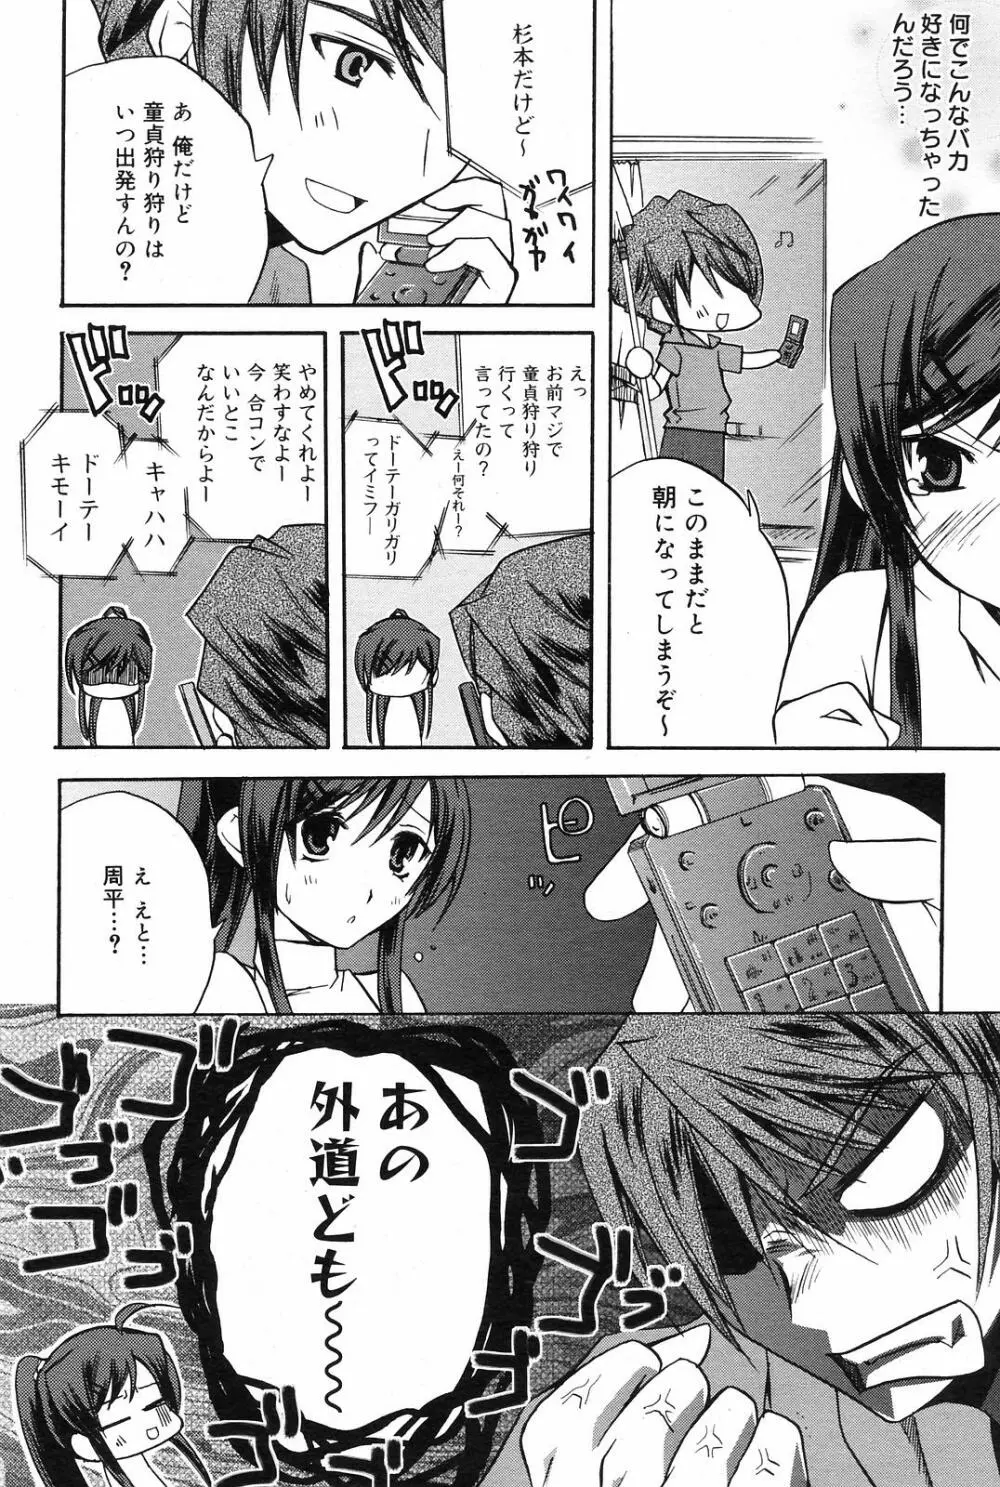 Manga Bangaichi 2008-09 84ページ